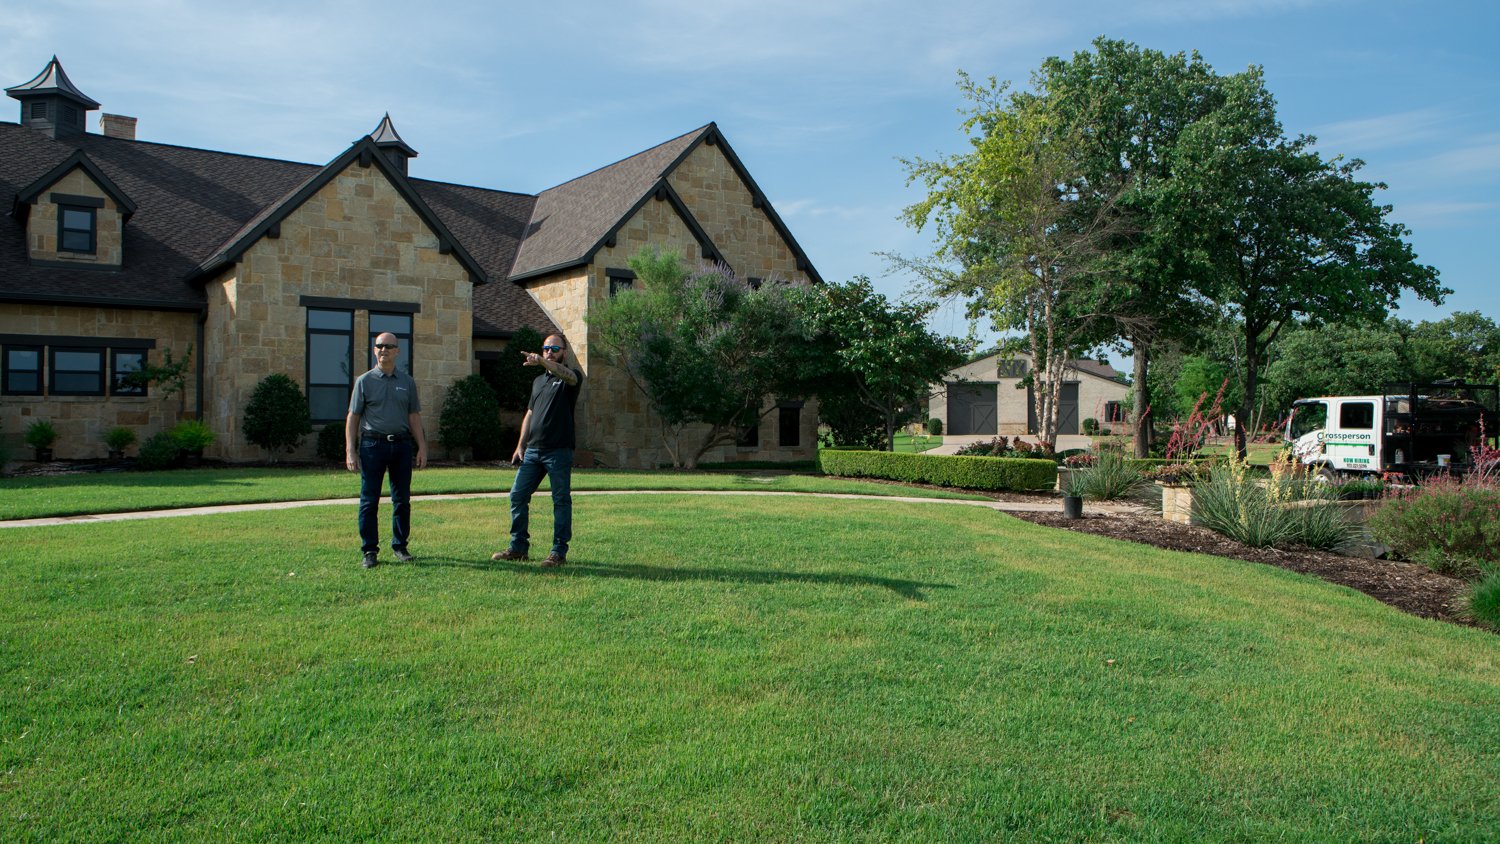 Lawn care technicians in lawn in North Texas